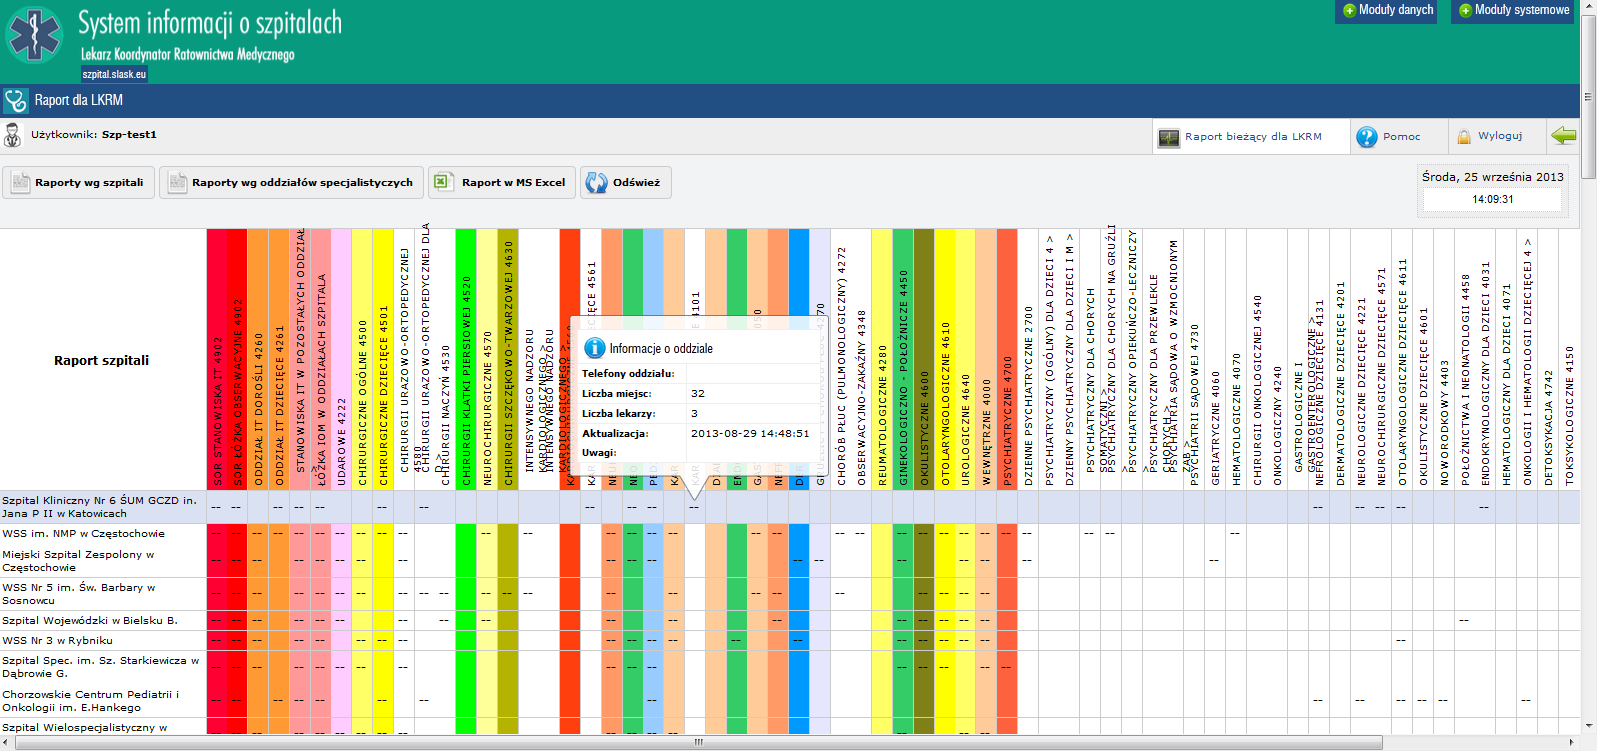 Widok raportu dla LKRM Zapis raportu do pliku Excel wraz metadanymi Odświeżenie informacji wprowadzonych do systemu Po najechaniu wskaźnikiem myszki na cyfrę uzyskujemy szczegółowe informacje